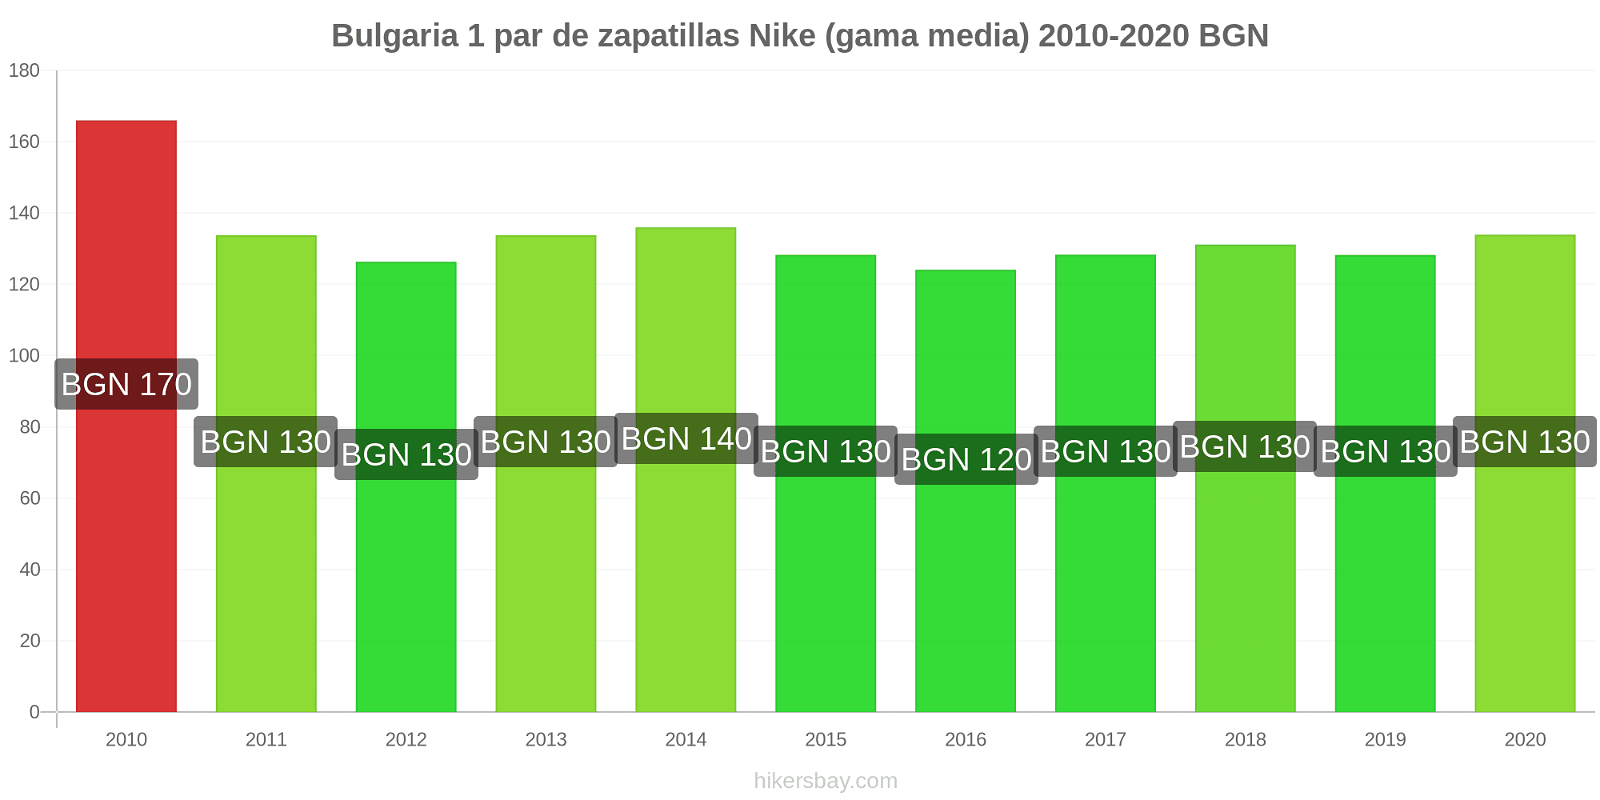 Bulgaria cambios de precios 1 par de zapatillas Nike (gama media) hikersbay.com